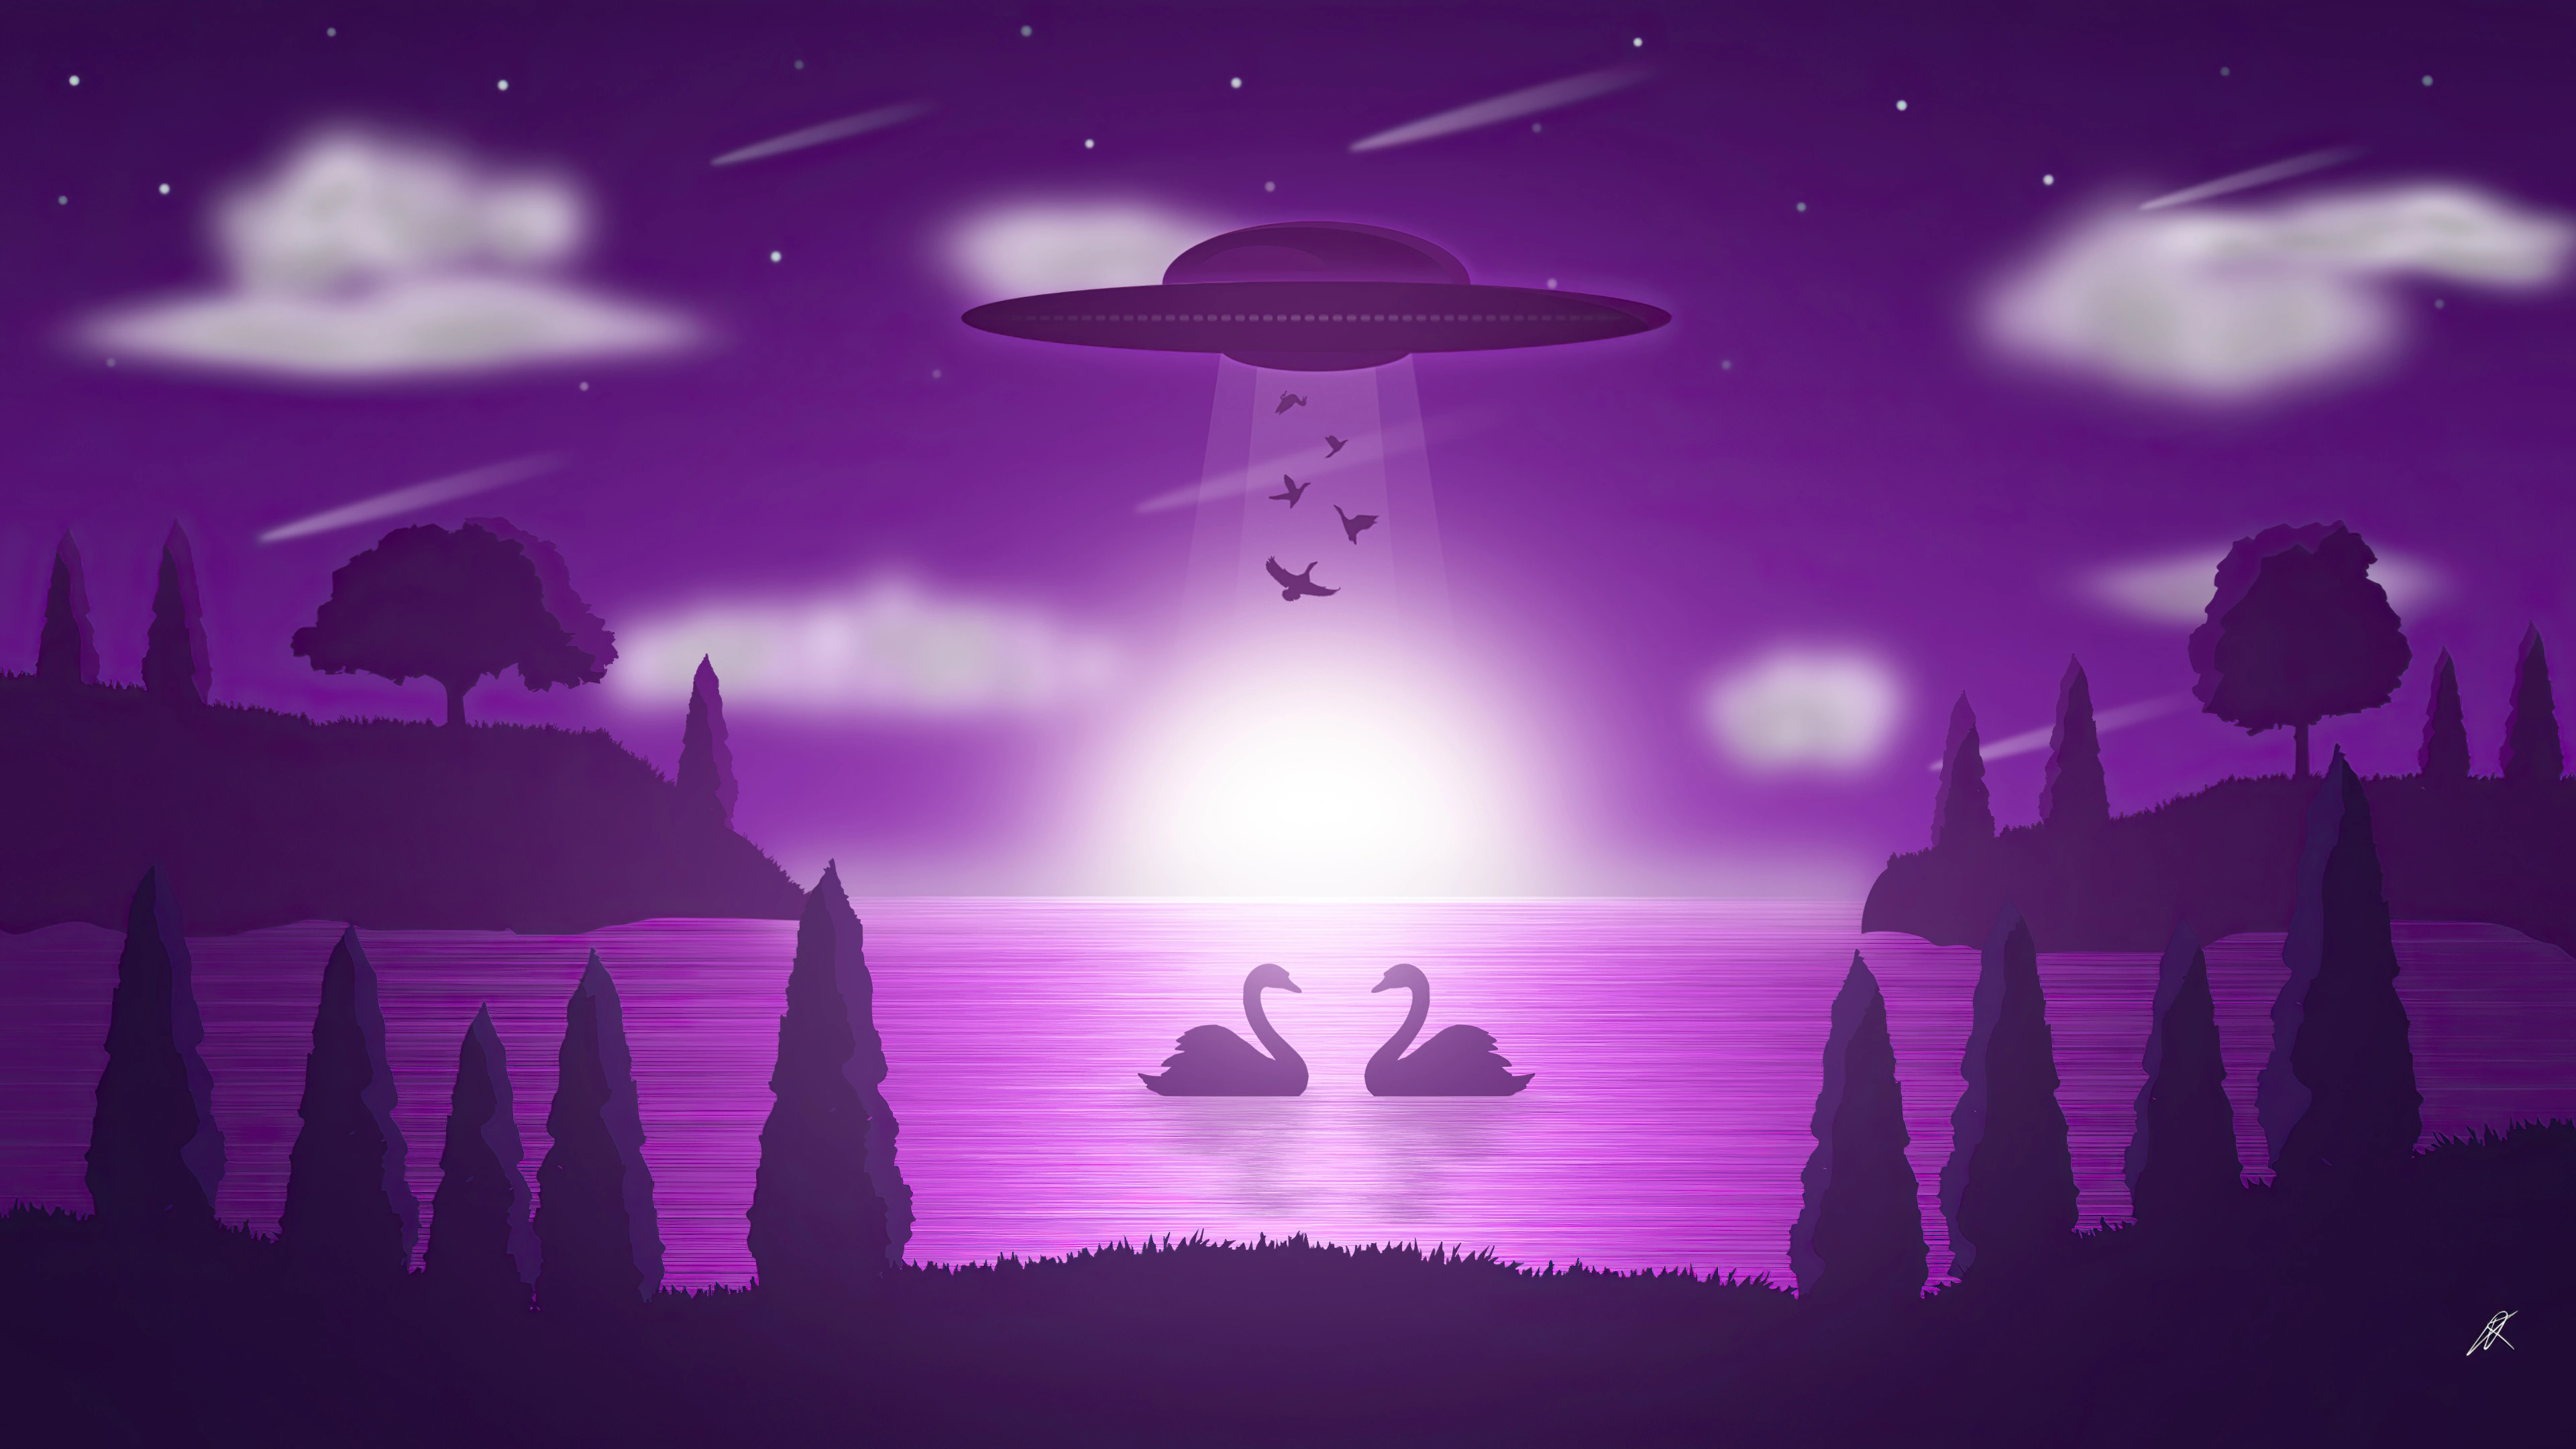 ufo swan illustration cb.jpg